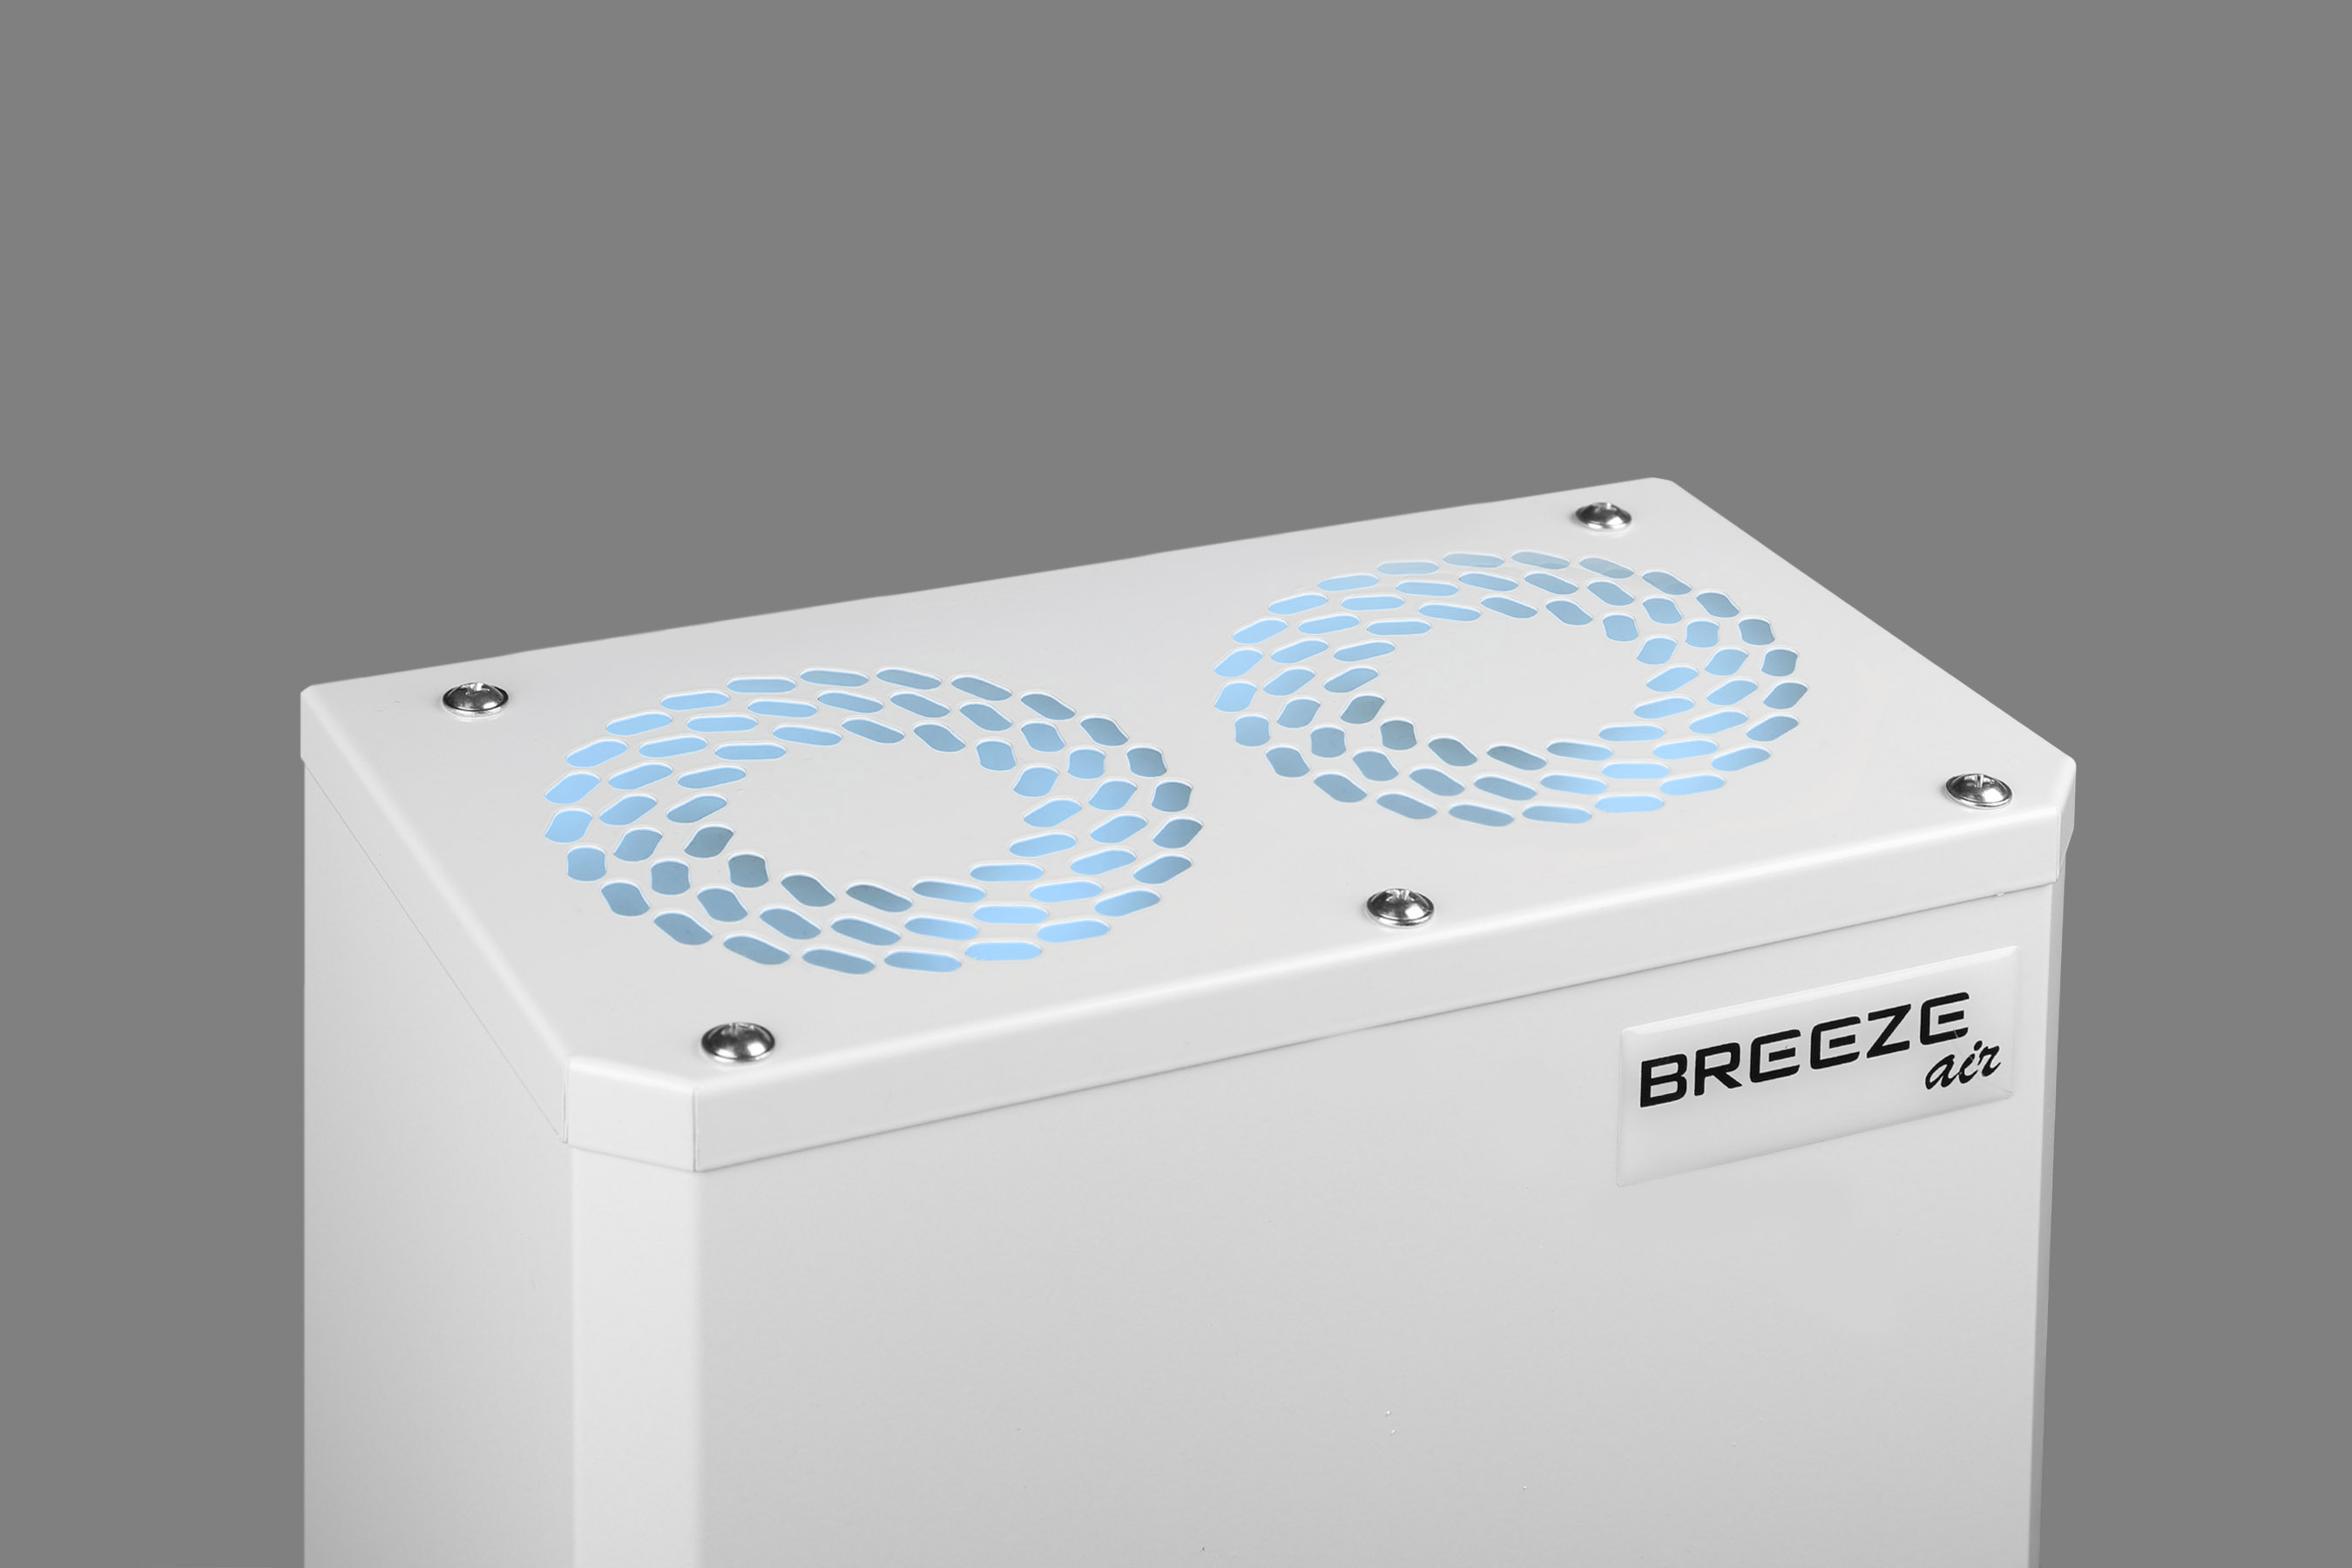 Бактерицидный рециркулятор-очиститель ОРБ-230 BREEZE air